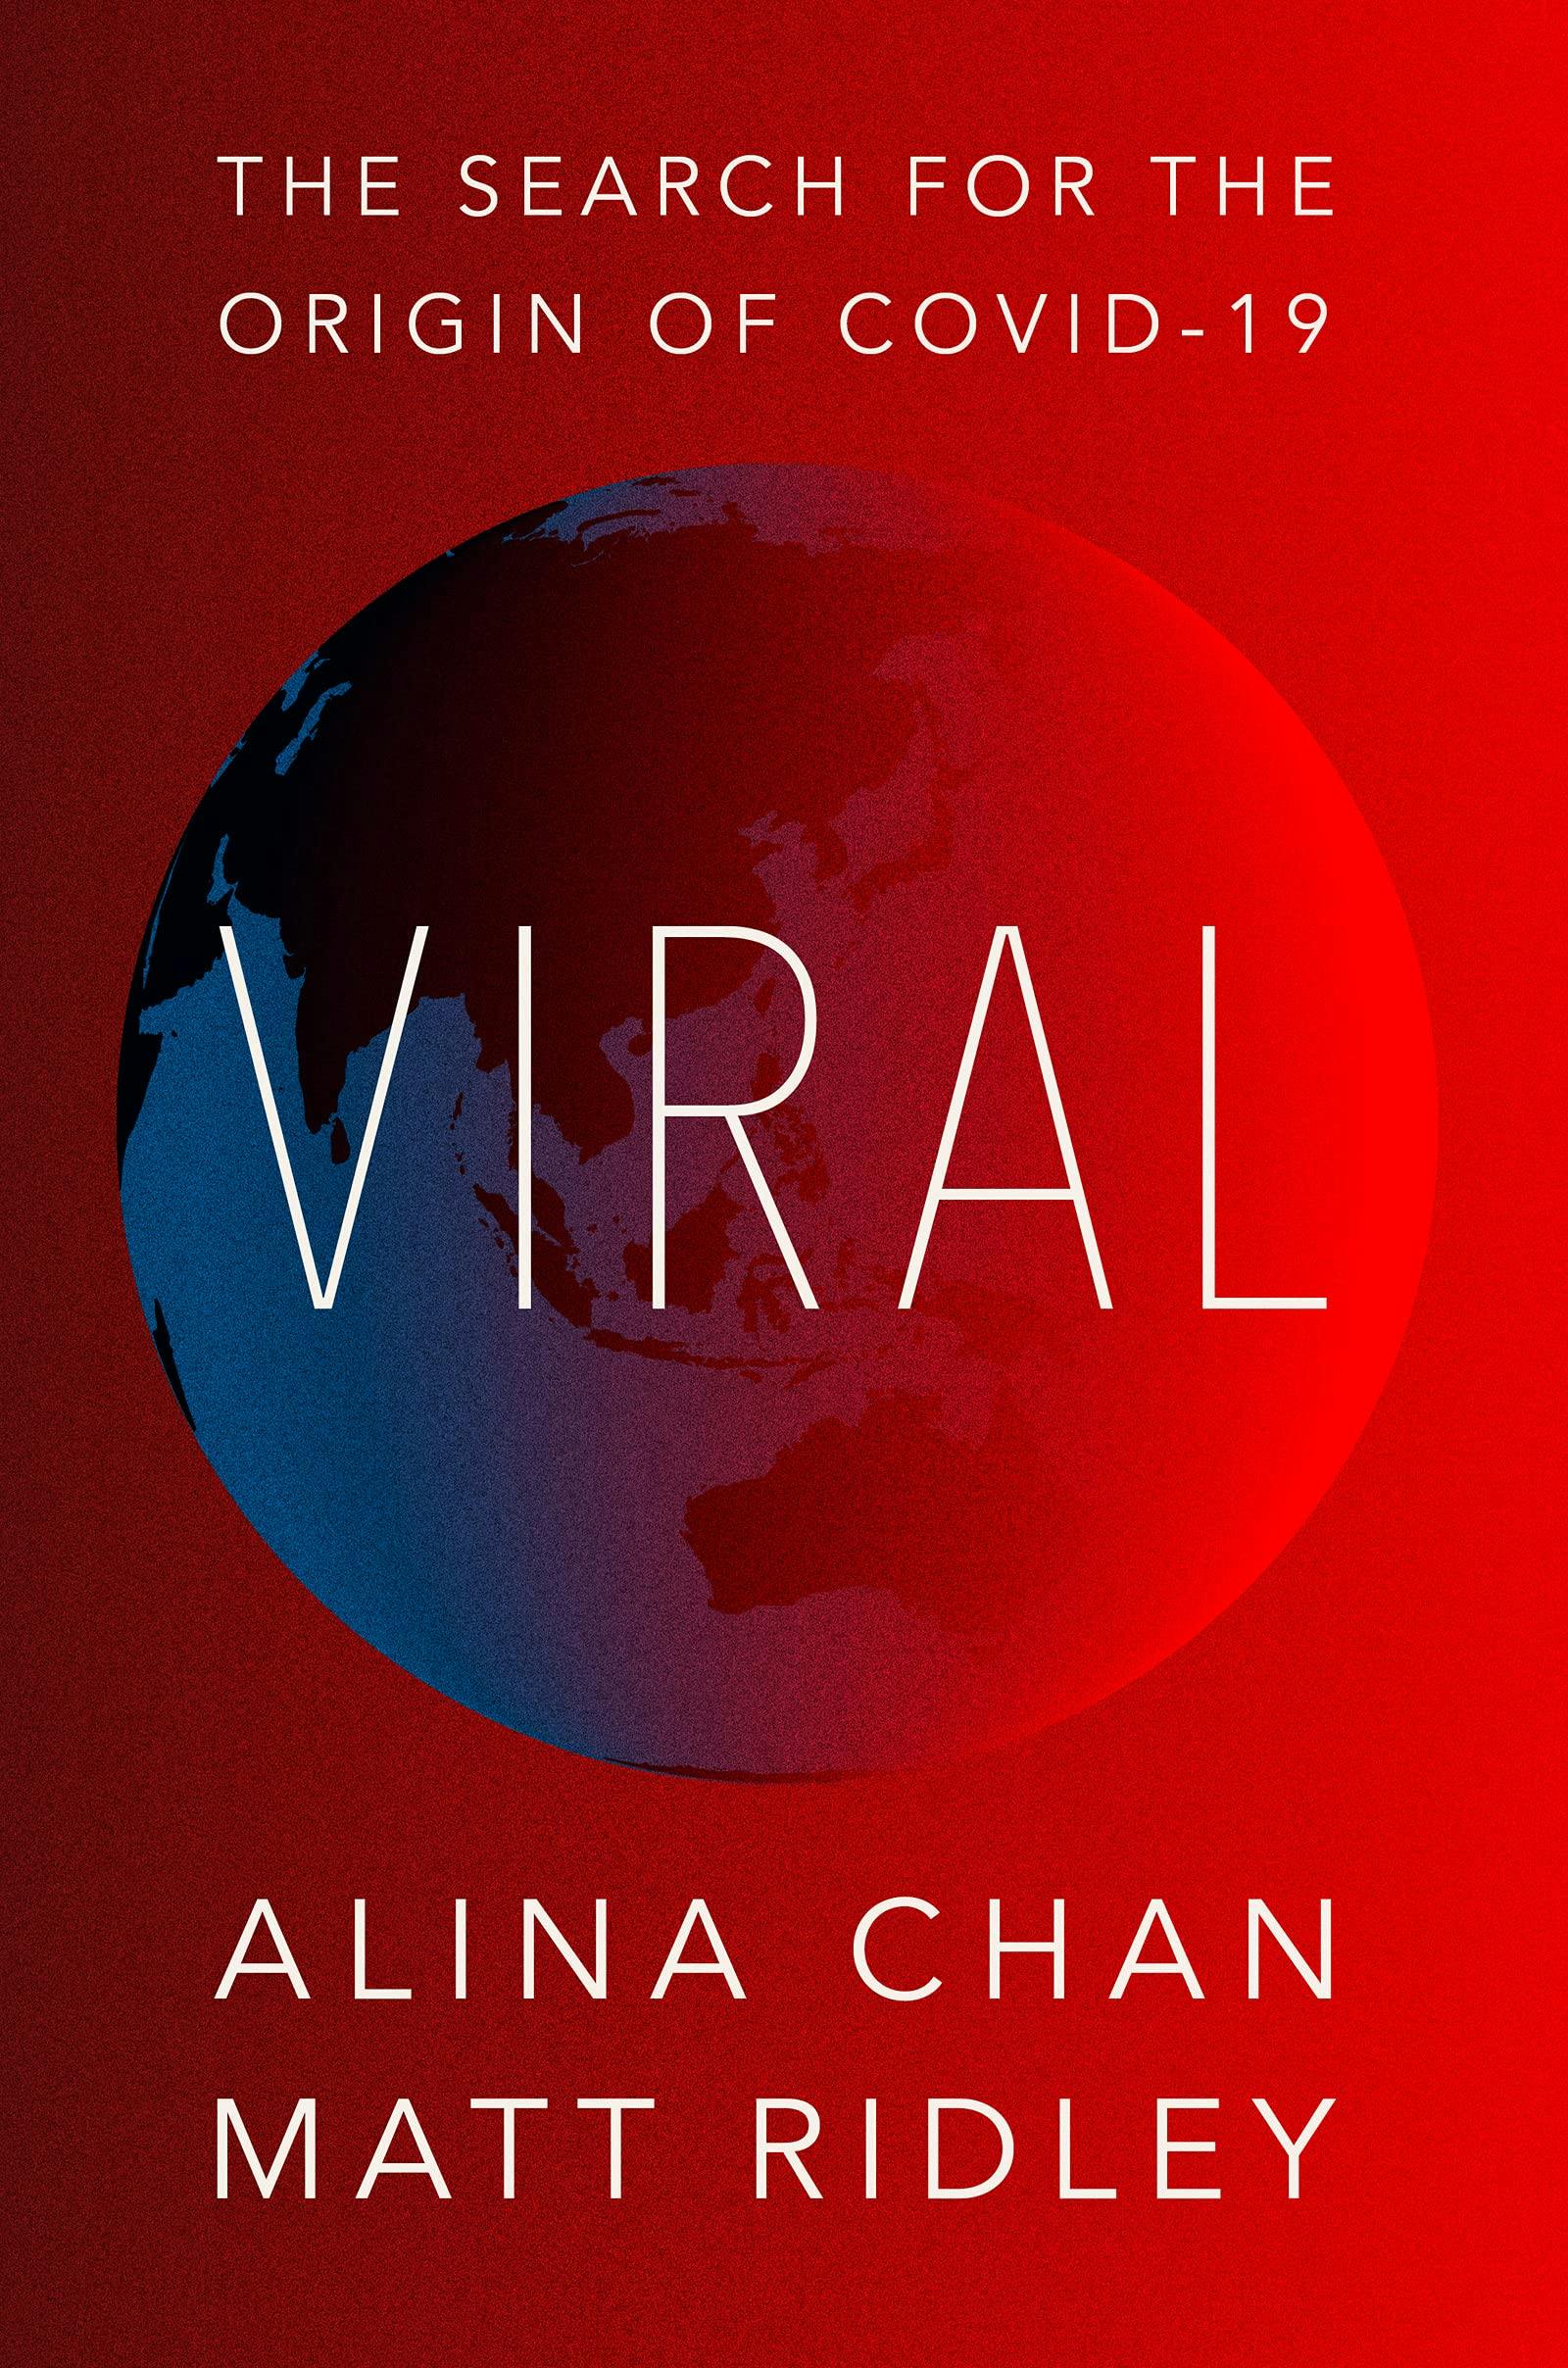 "Viral" by "Matt Ridley, Alina Chan"